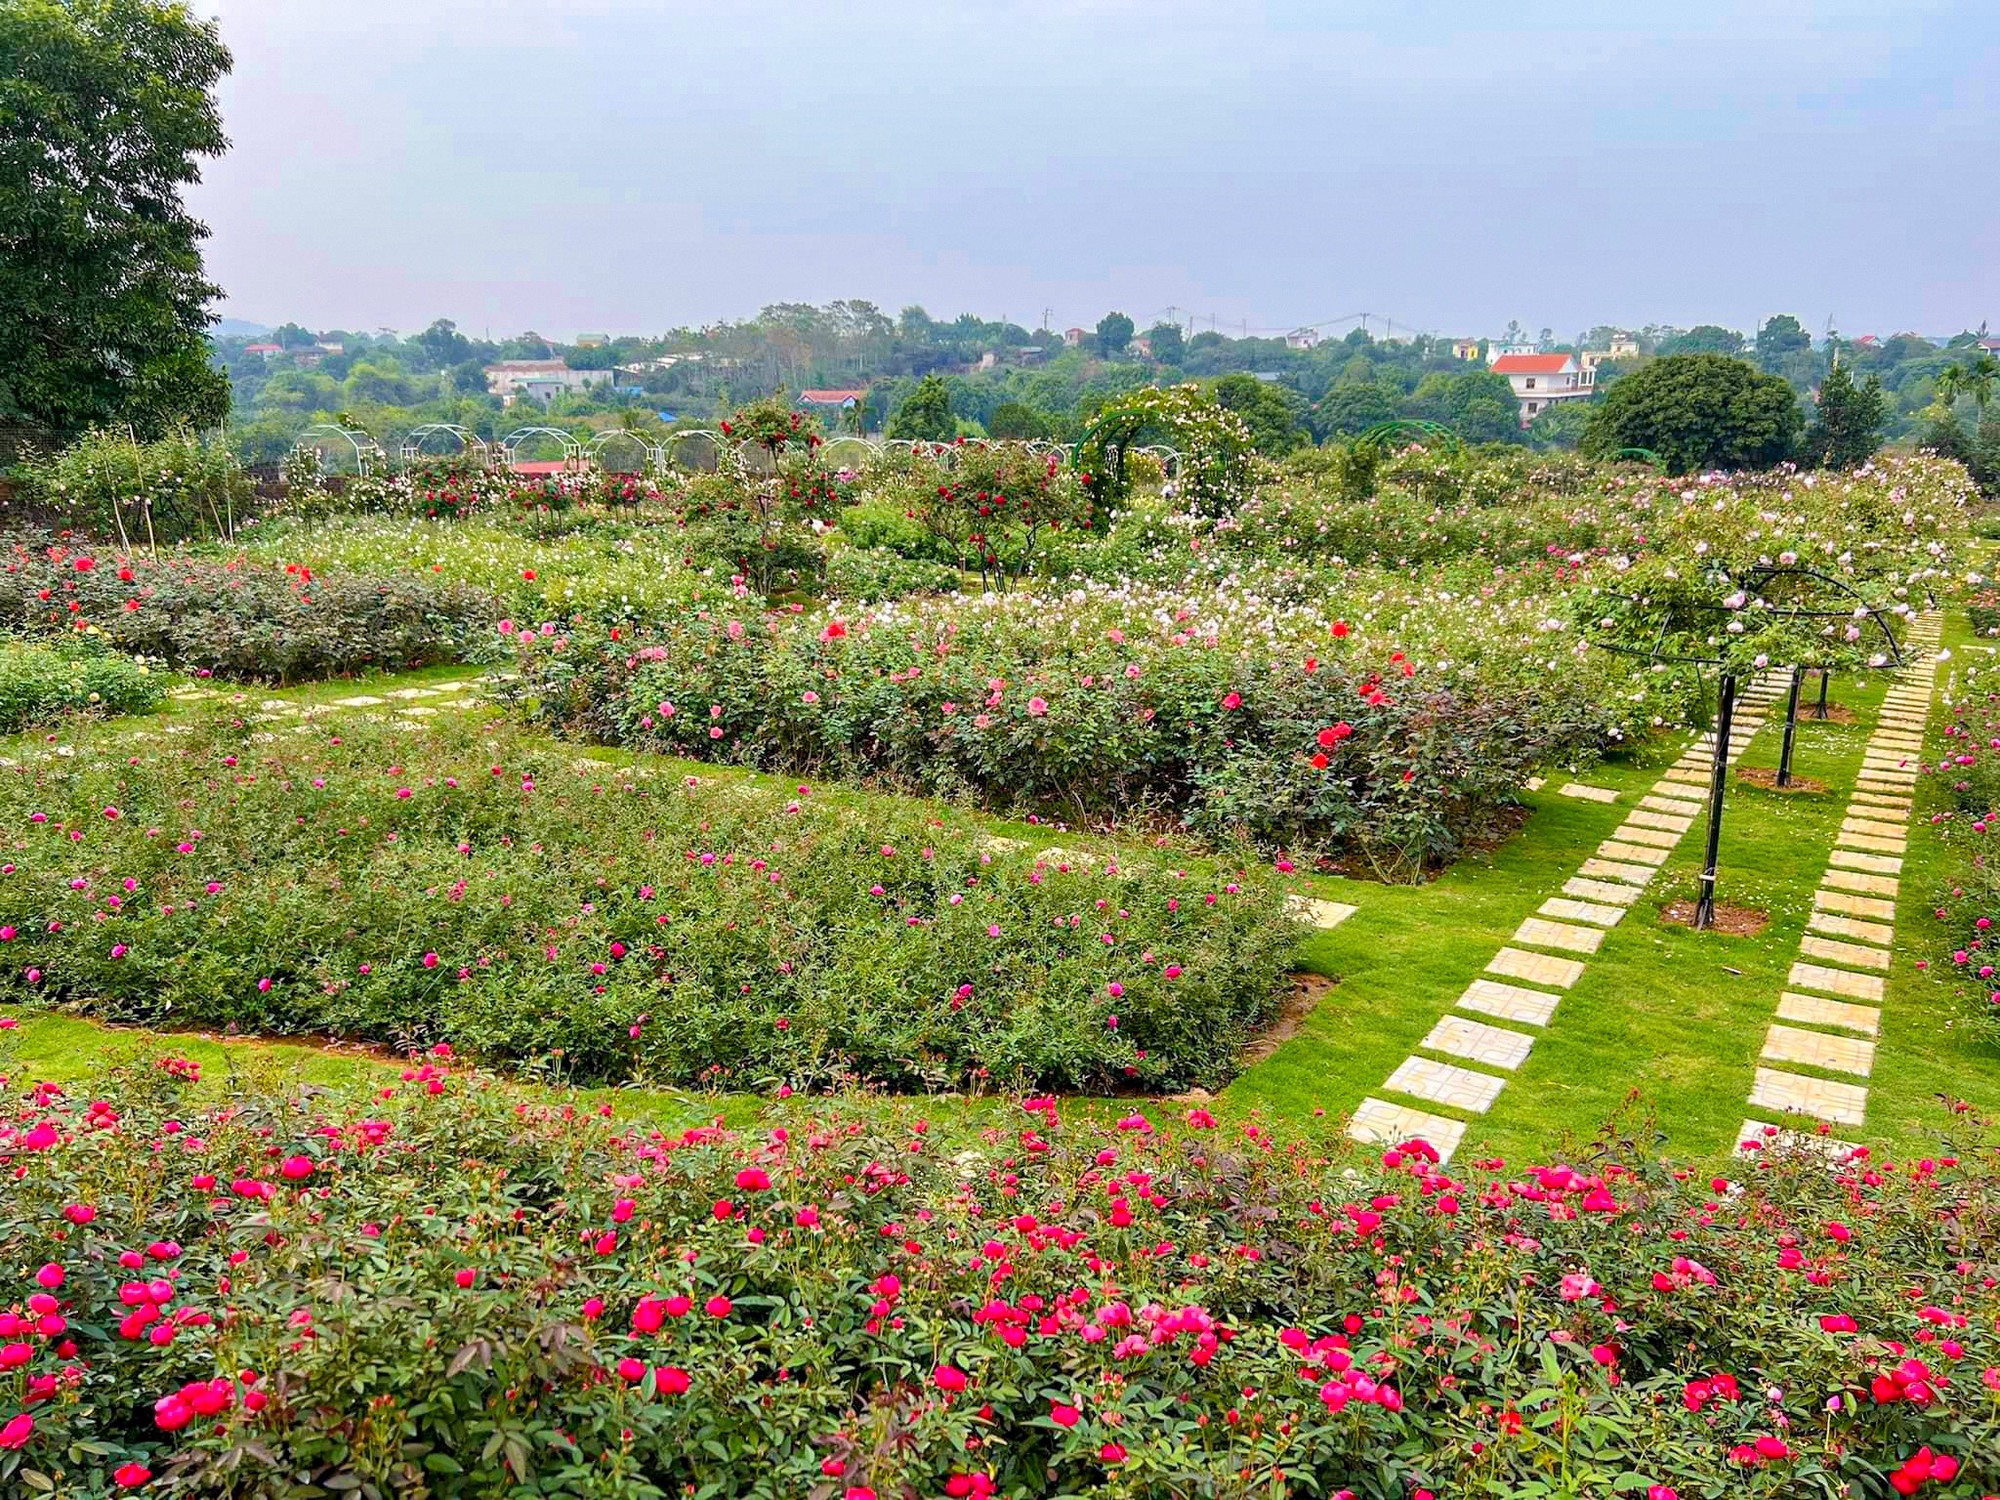 Hình ảnh vườn hồng chất lượng cao trên Shutterstock Hueblogger